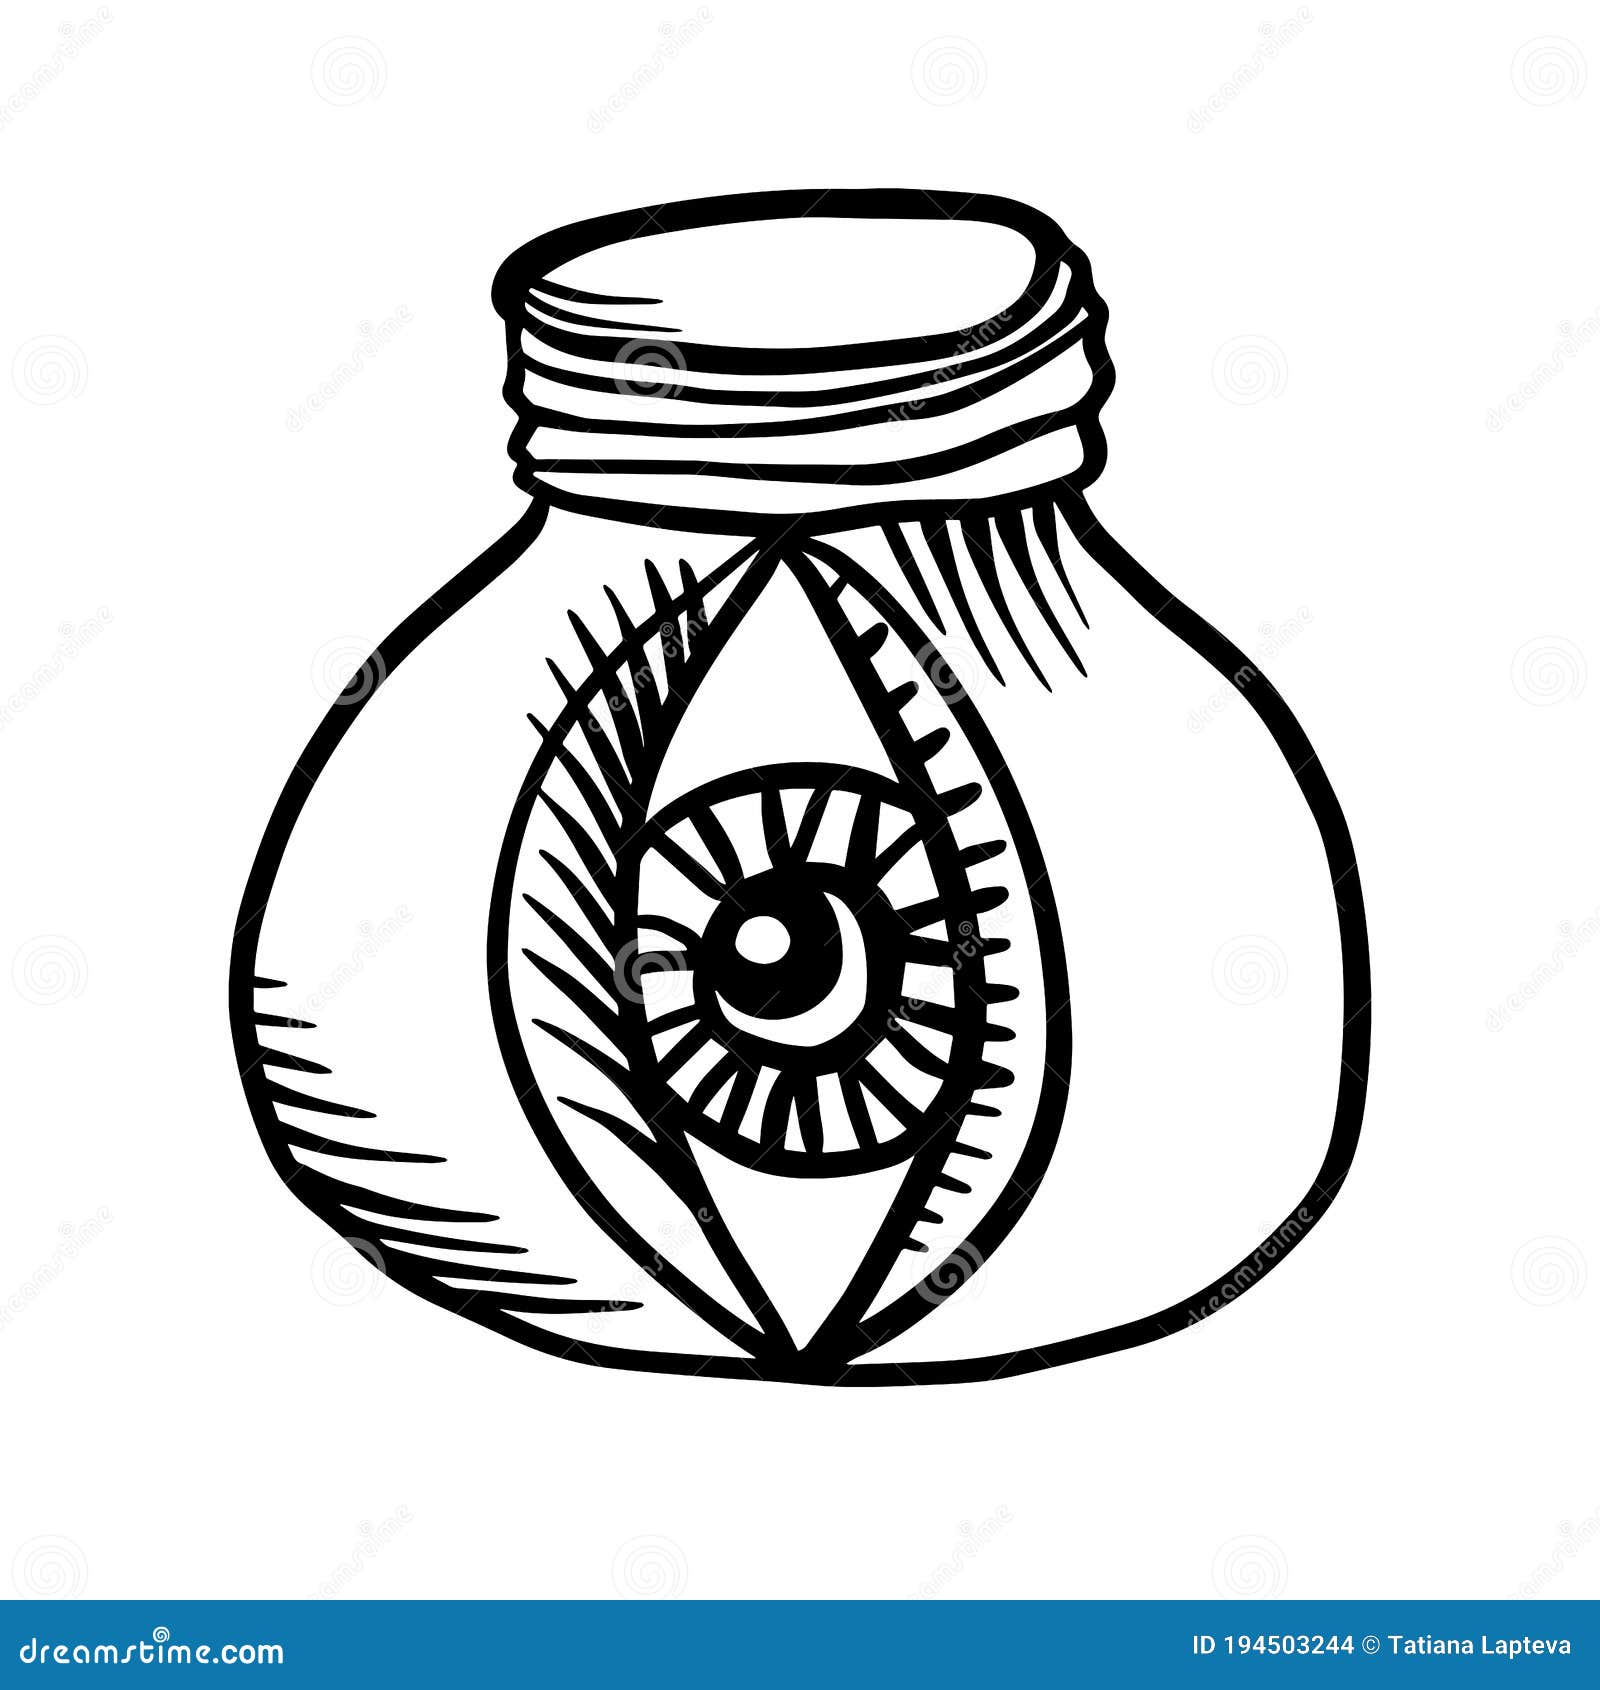 Gráfico vetorial de ilustração de olho perfeito para design de